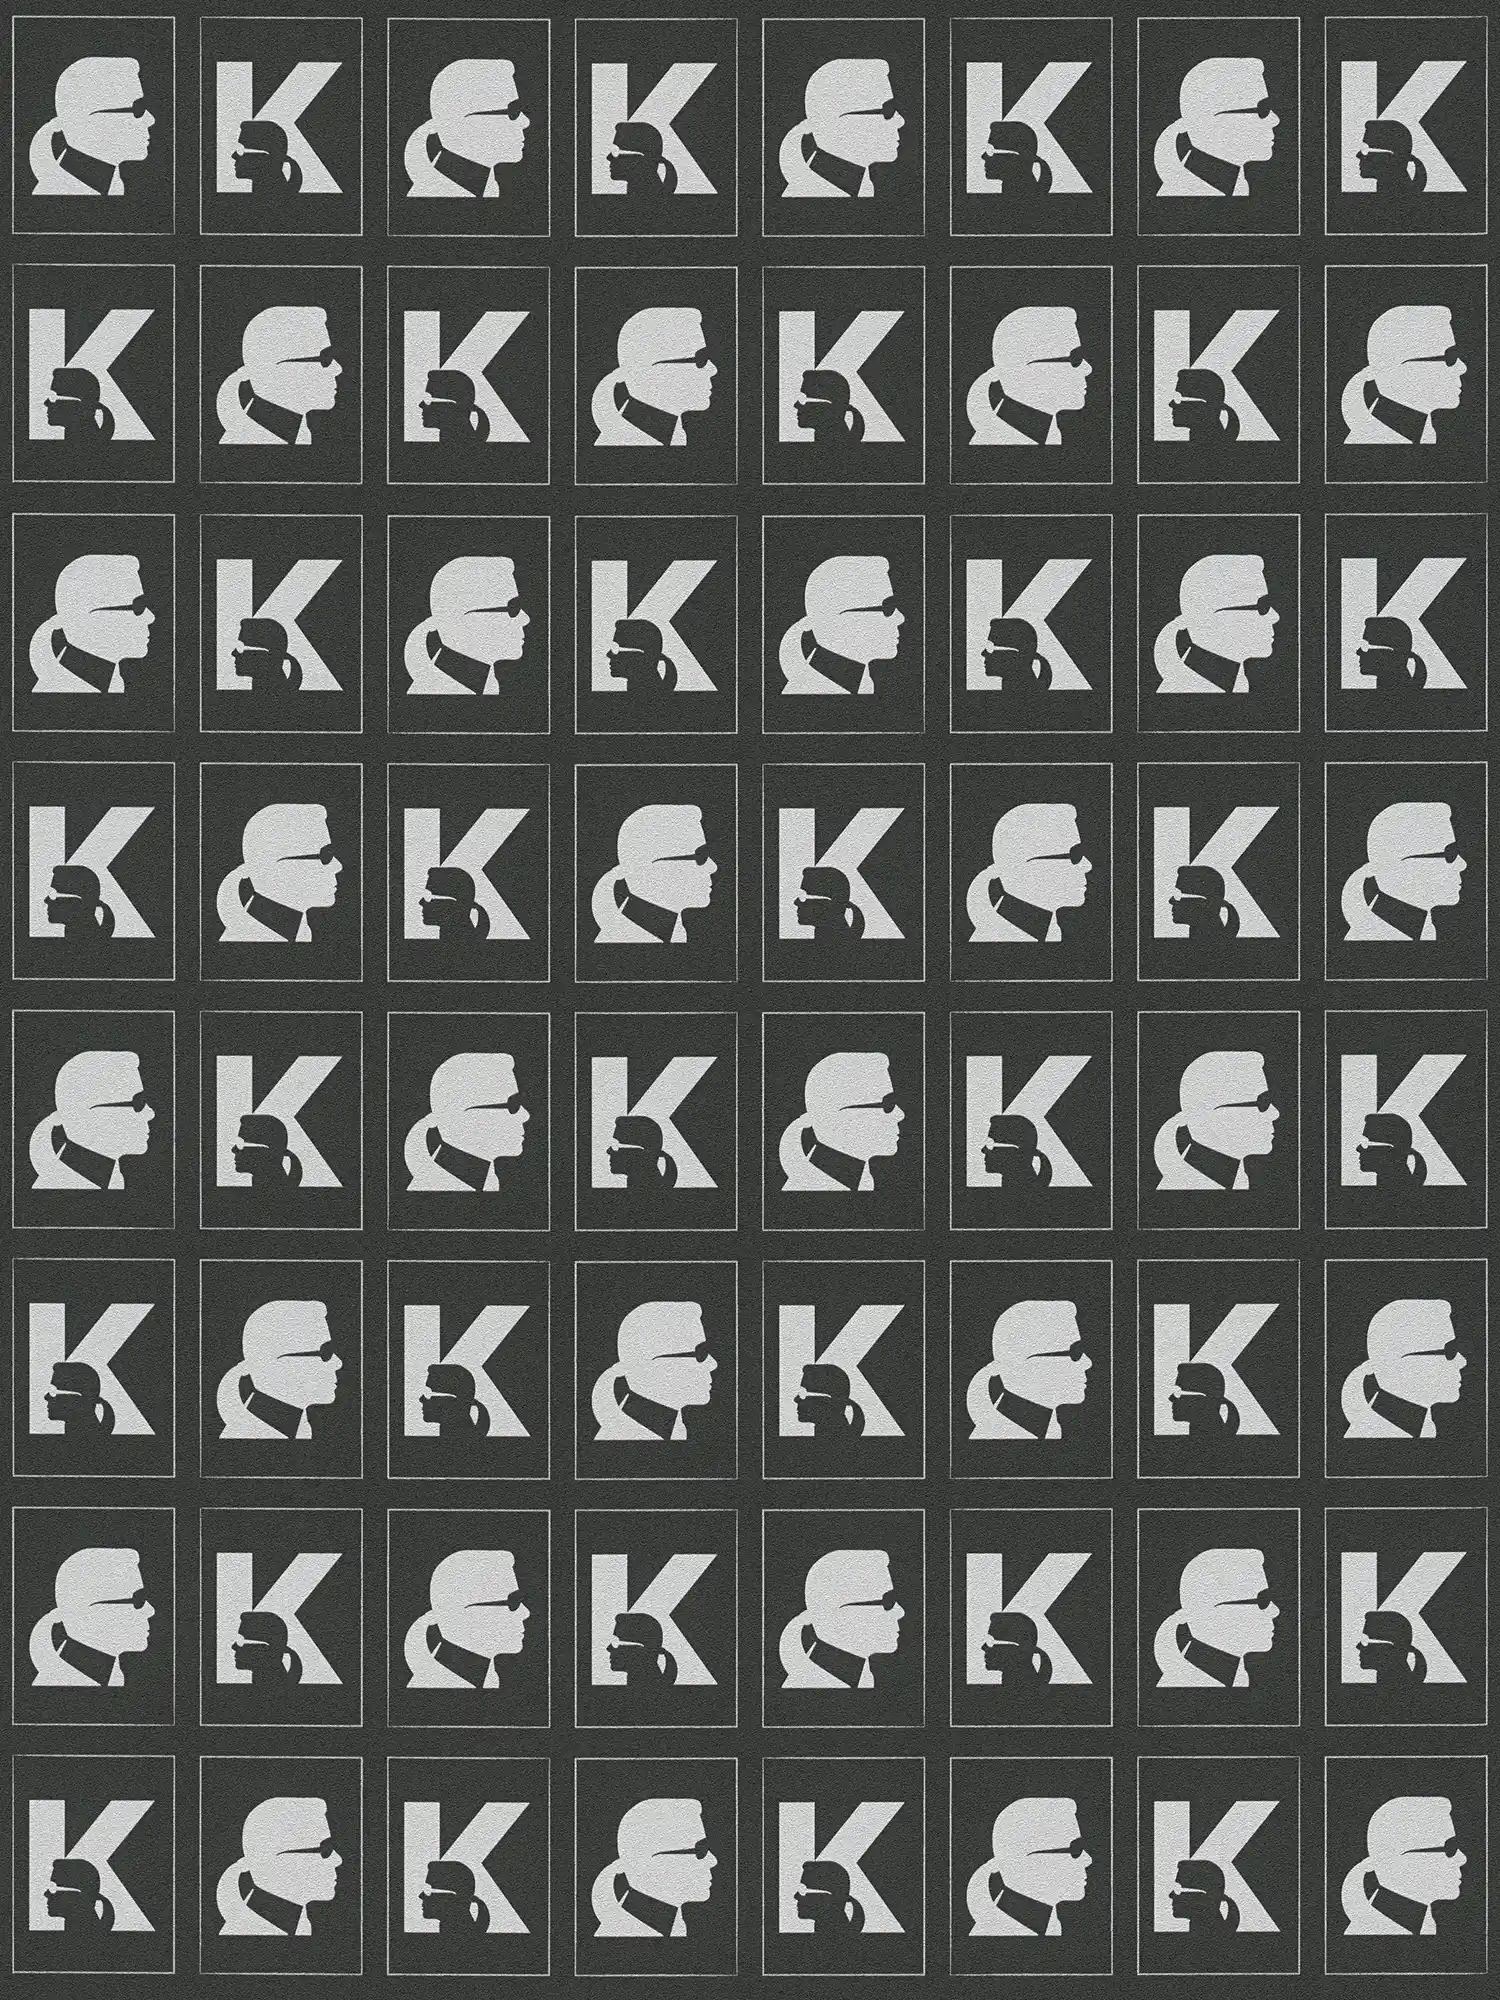 Karl LAGERFELD non-woven wallpaper emblem pattern - metallic, black
